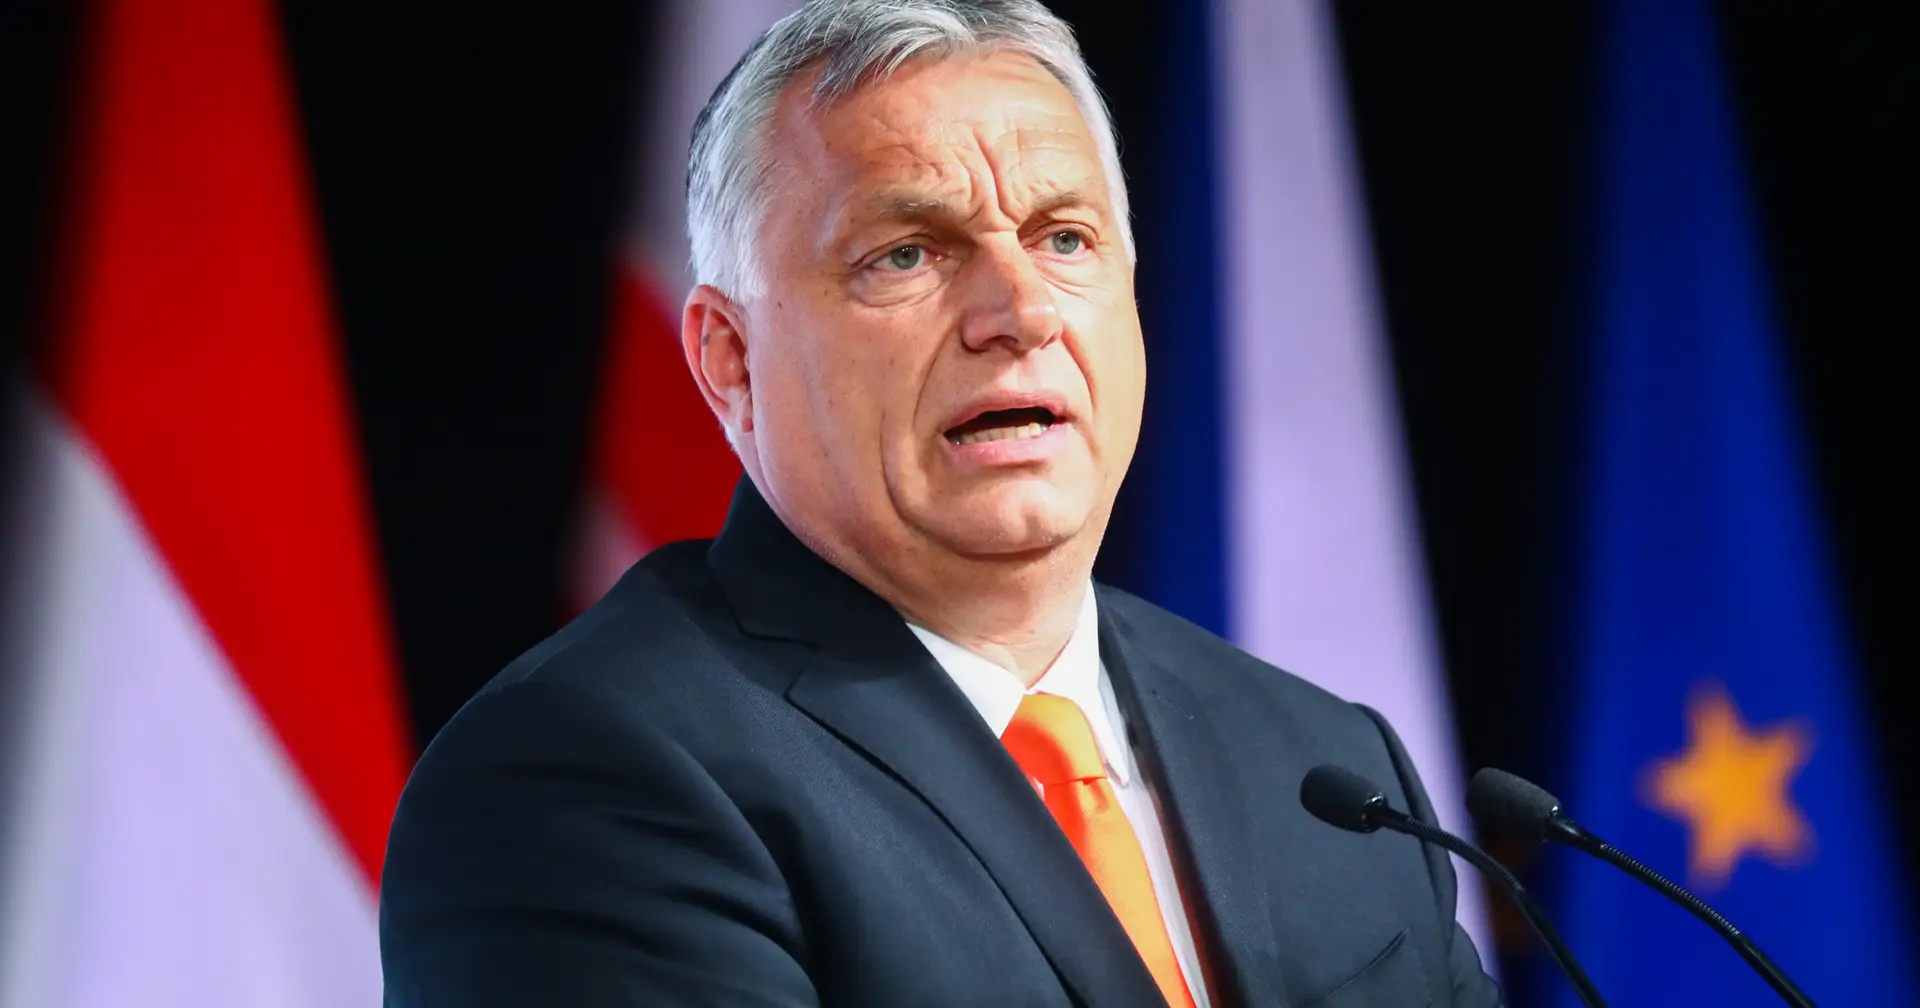 Ucrânia: Orbán vaticina que Kiev 